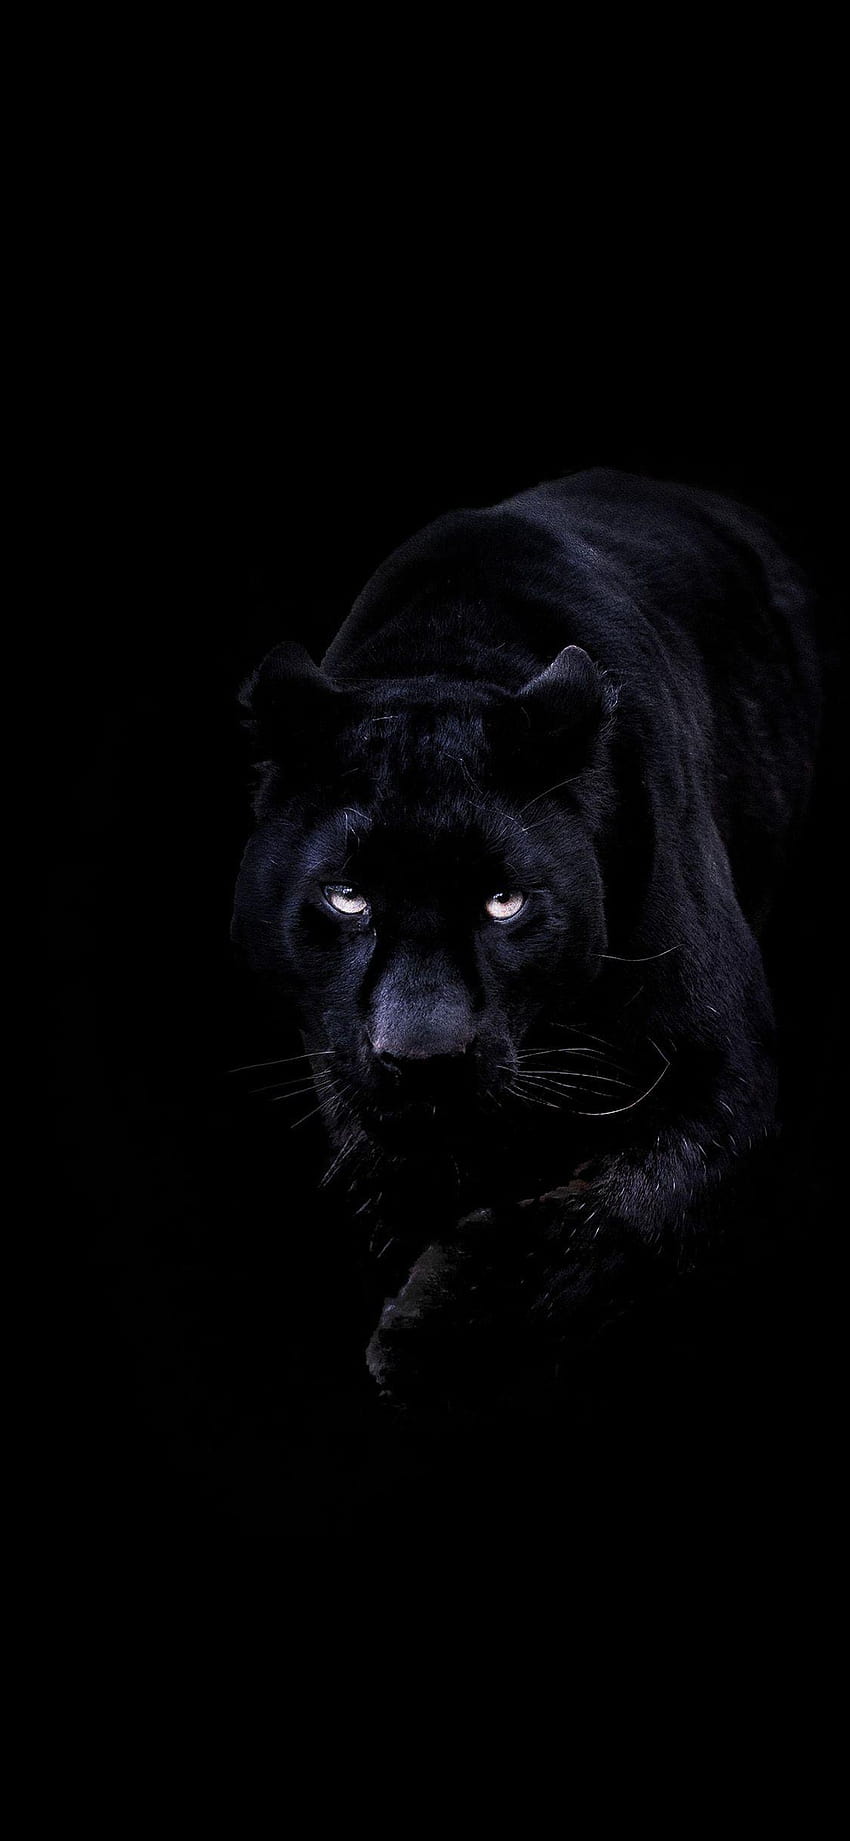 balu prasad auf Dunkelschwarz im Jahr 2019, schwarzes Jaguar-Tiermobil HD-Handy-Hintergrundbild